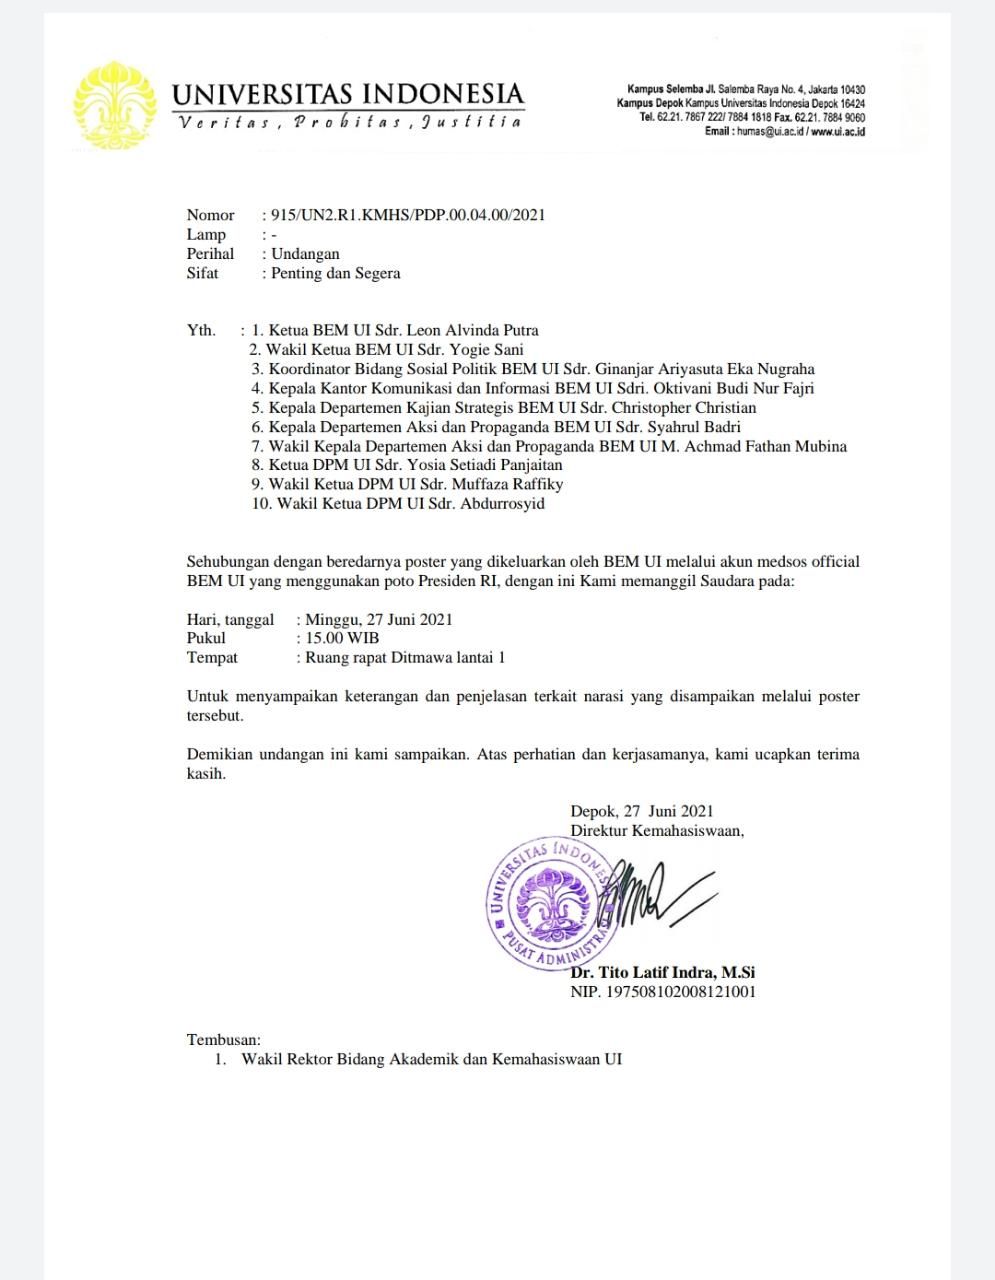 Surat Pemanggilan UI terkait postingan berisikan poster Presiden Joko Widodo yang dikeluarkan oleh BEM UI melalui instagram @official BEM UI